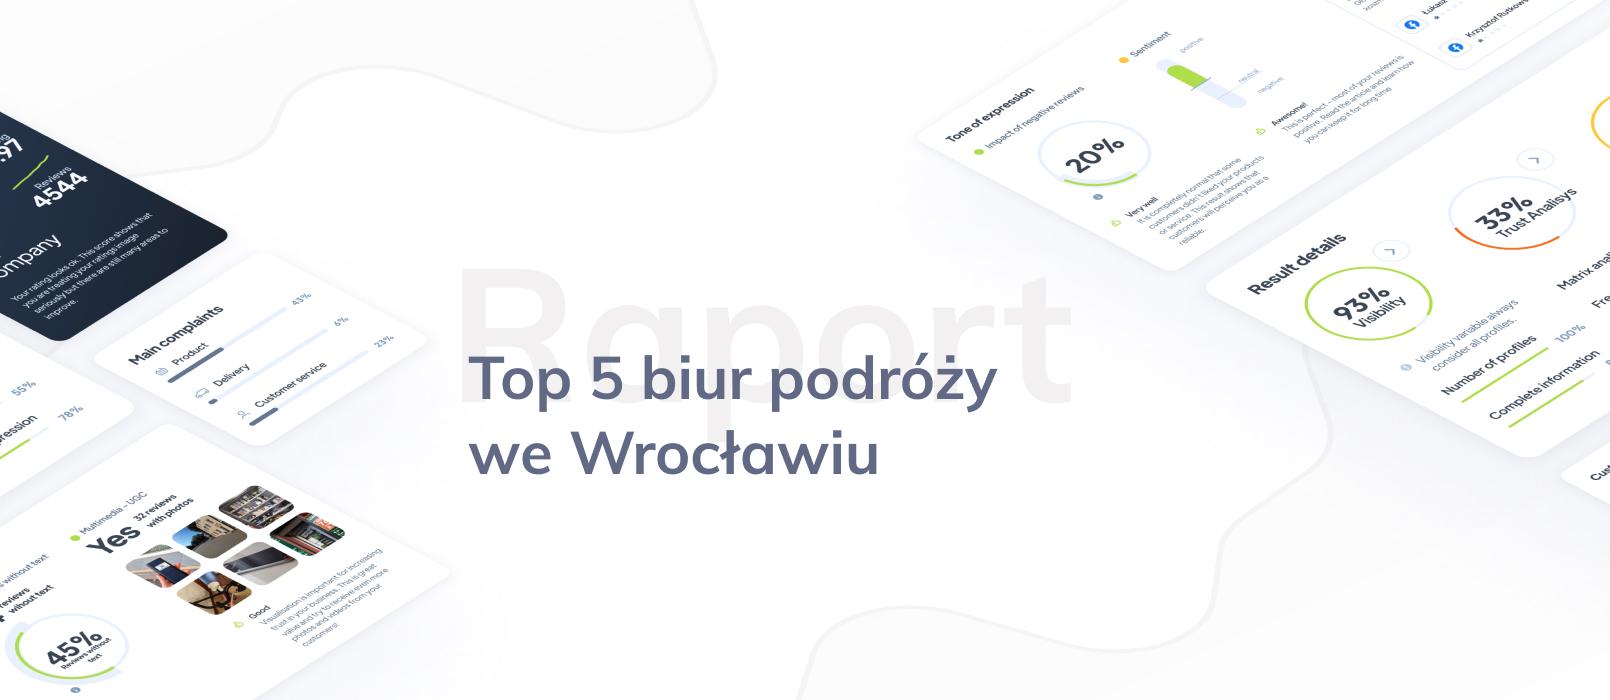 Top 5 biur podróży we Wrocławiu – ranking opinii klientów